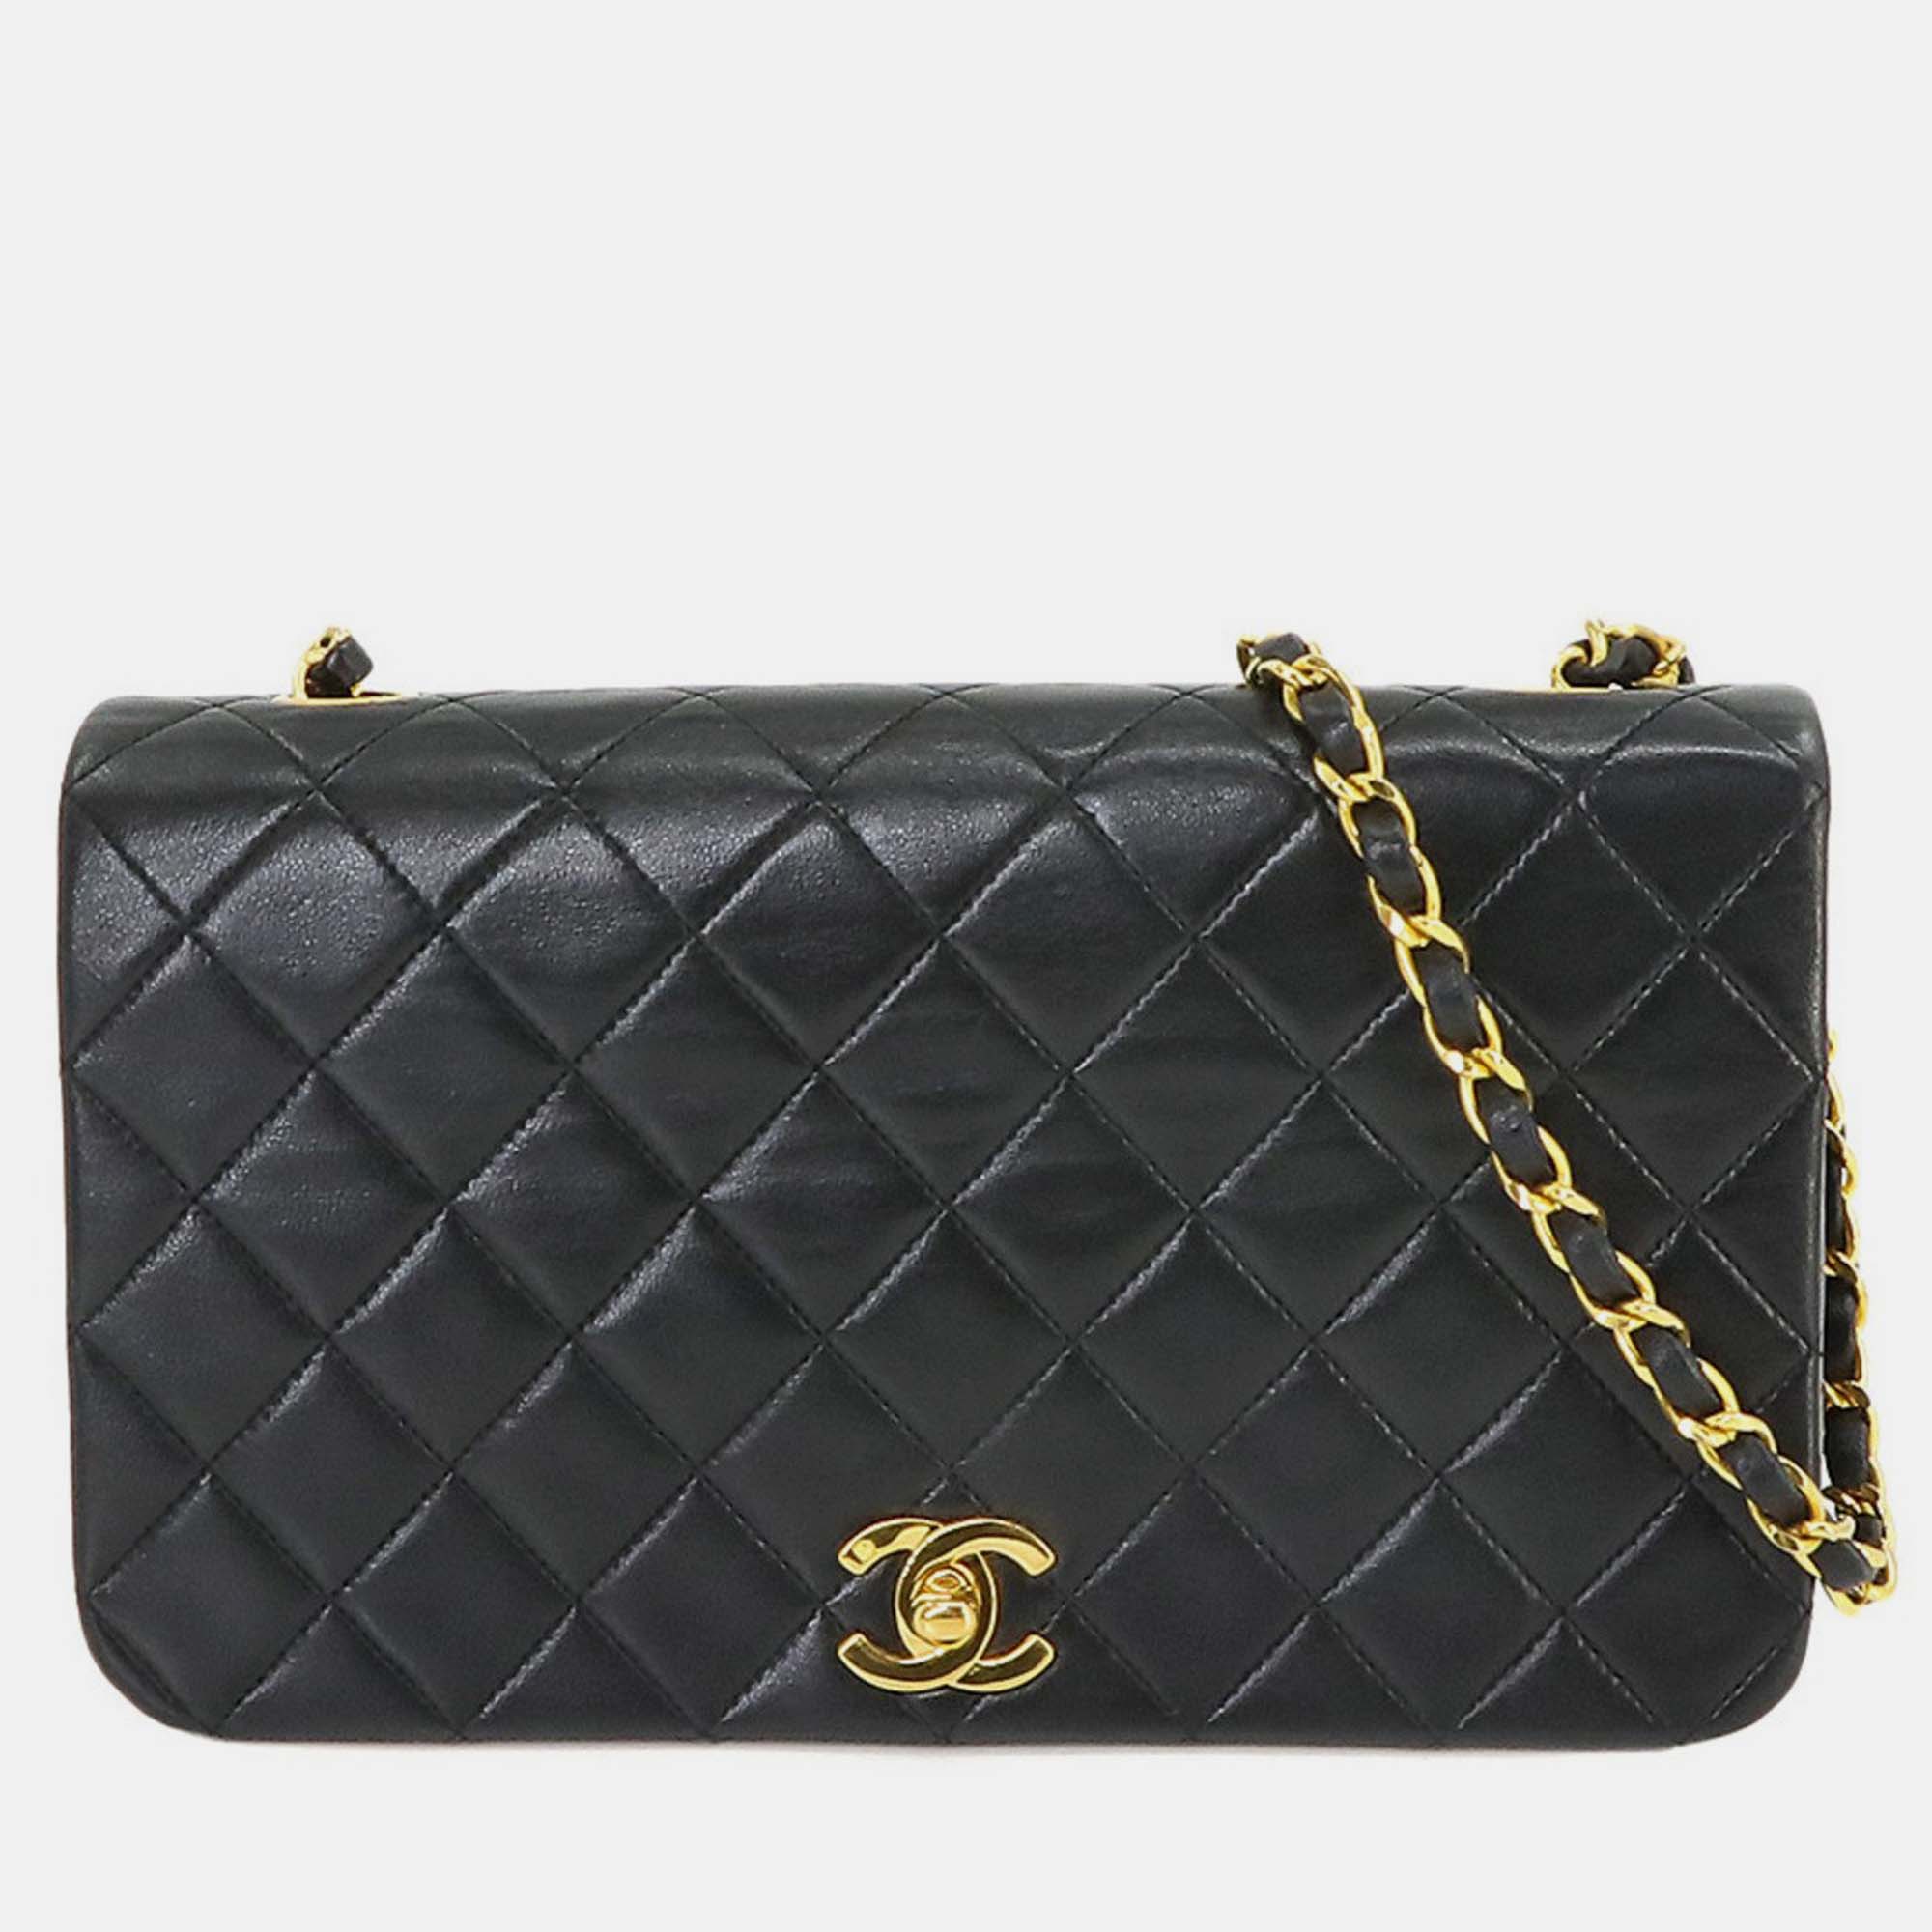 Chanel black leather full flap bag shoulder bag